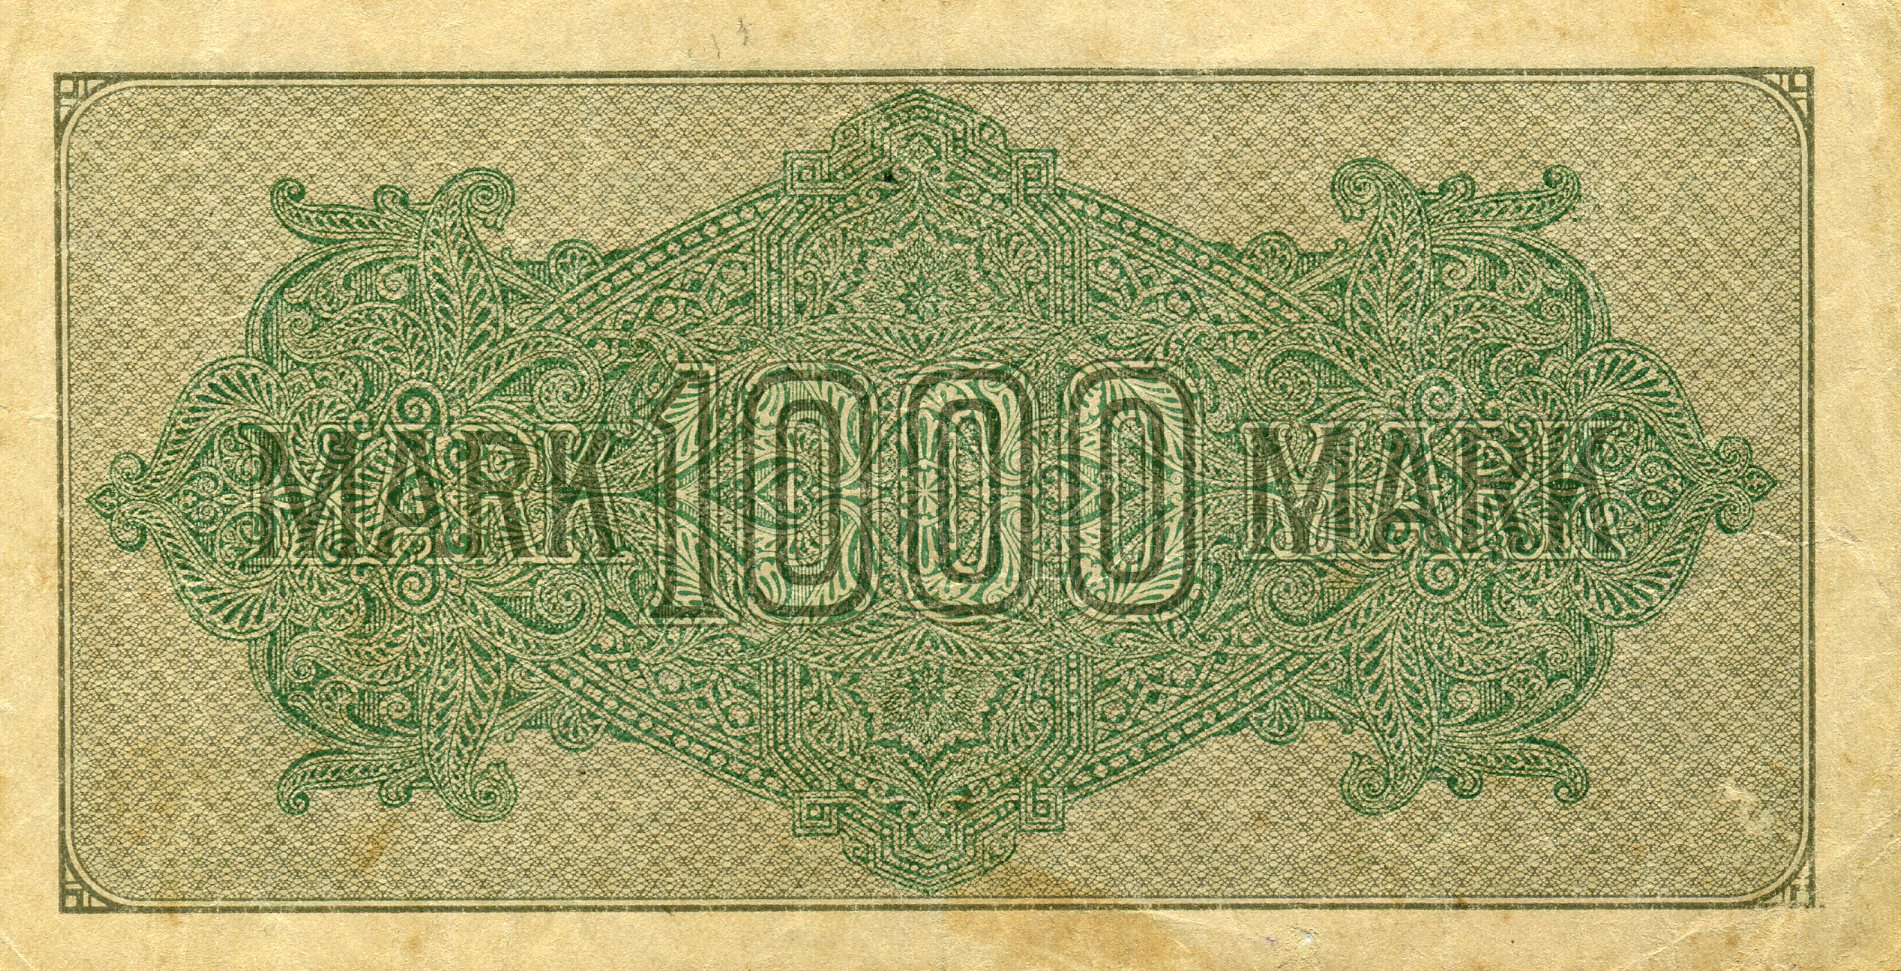 1000 марок 15 сентября 1922 года. Реверс. Реферат Рефератович.